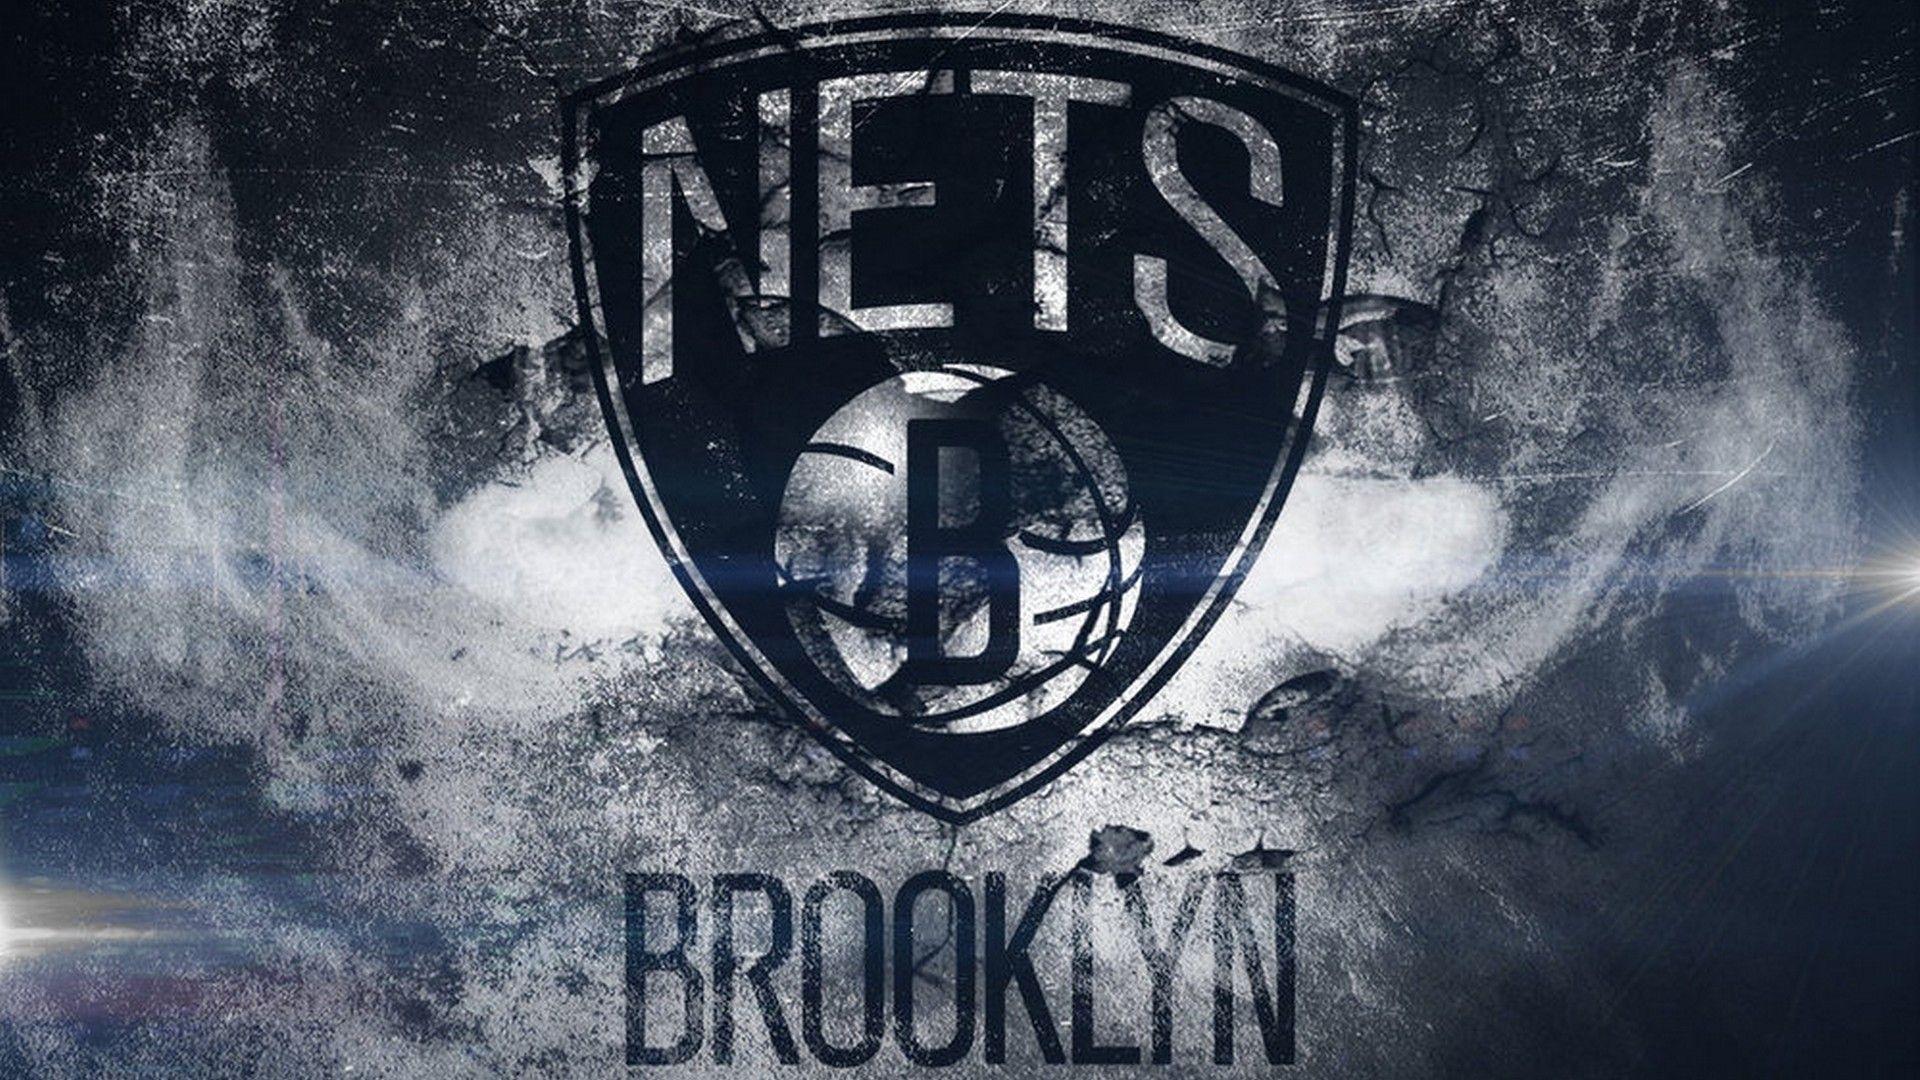 Brooklyn Nets For Mac Wallpaper. Mac wallpaper, Brooklyn